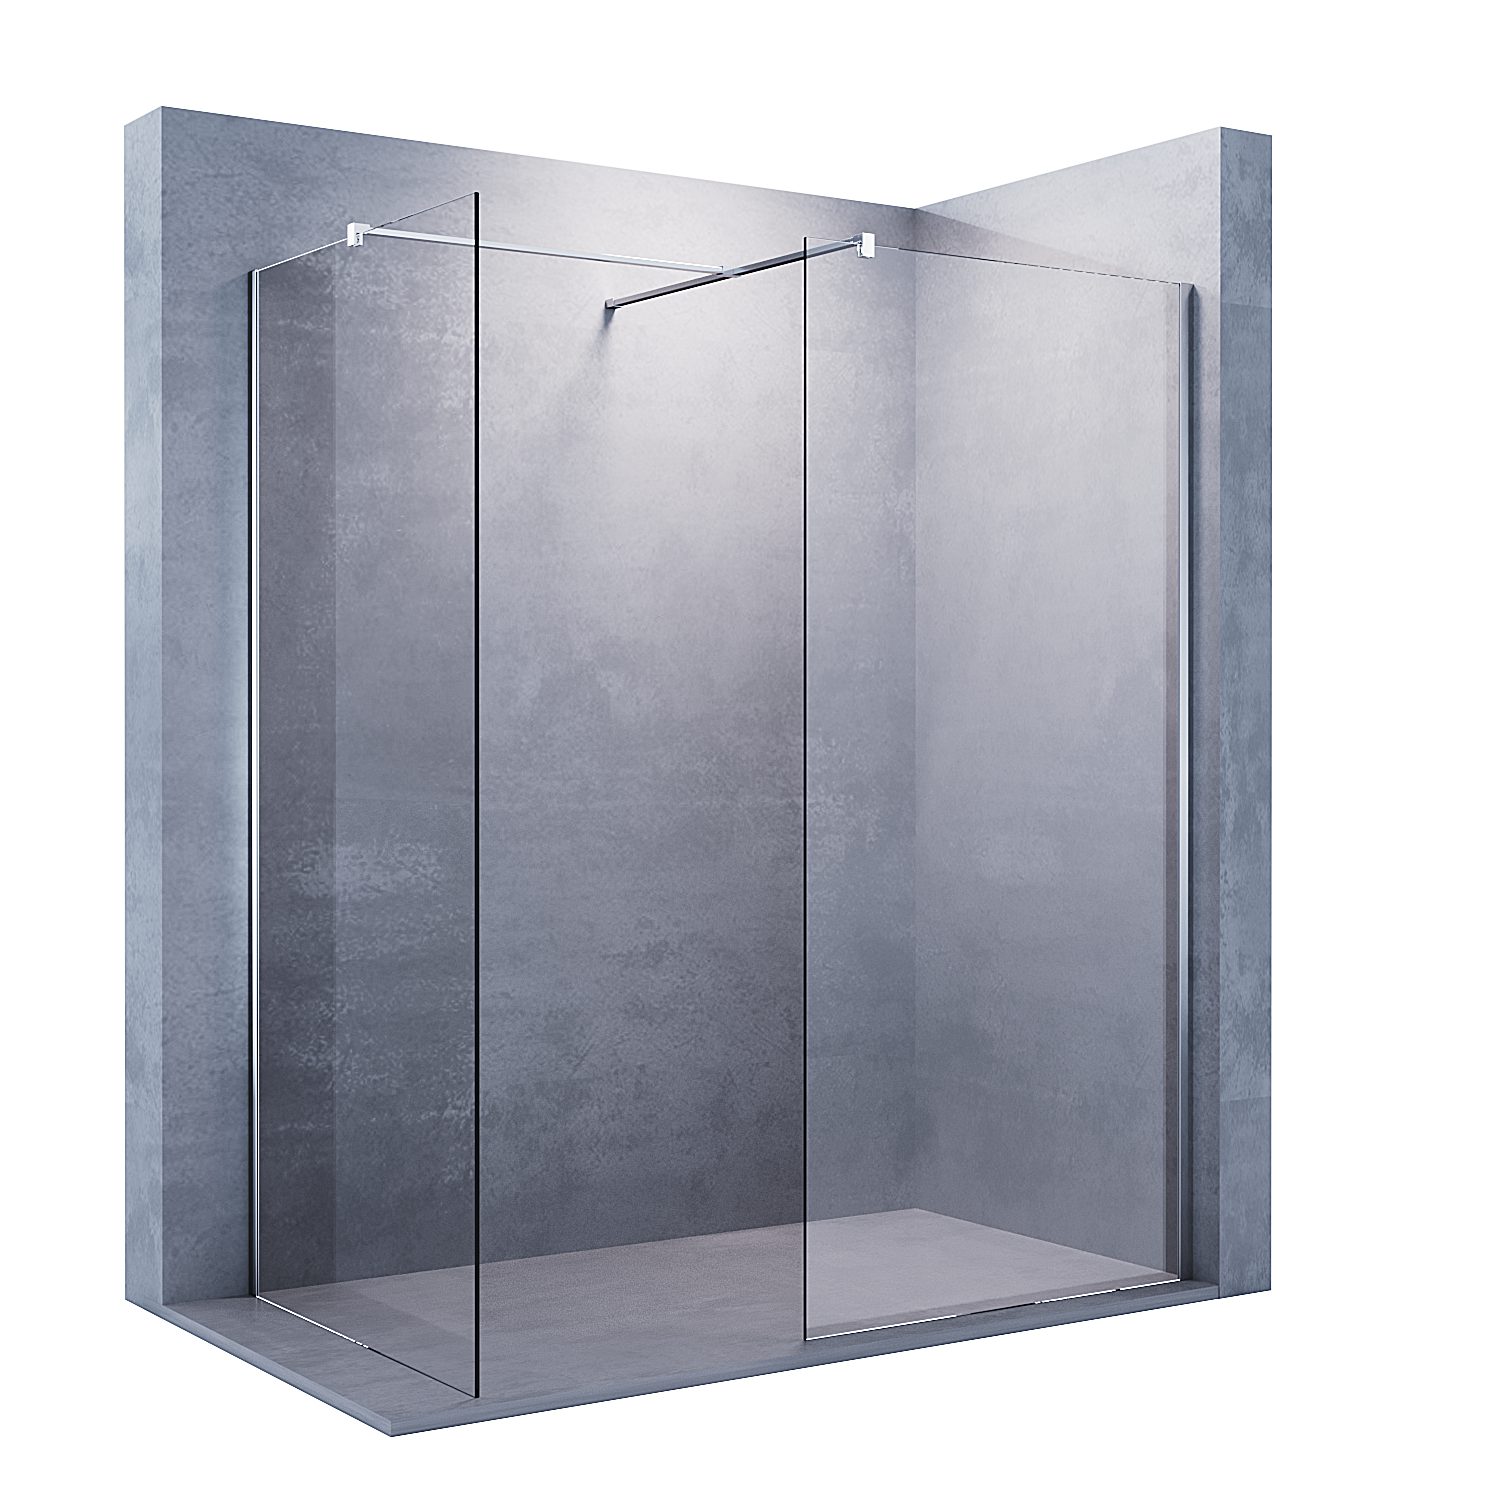 SONNI Duschwand Walk in Duschwand Duschabtrennung, Duschkabine mit festem Seitenteil, 8mm Einscheibensicherheitsglas mit Nano Beschichtung, mit Verstellbereich, Höhe 200cm